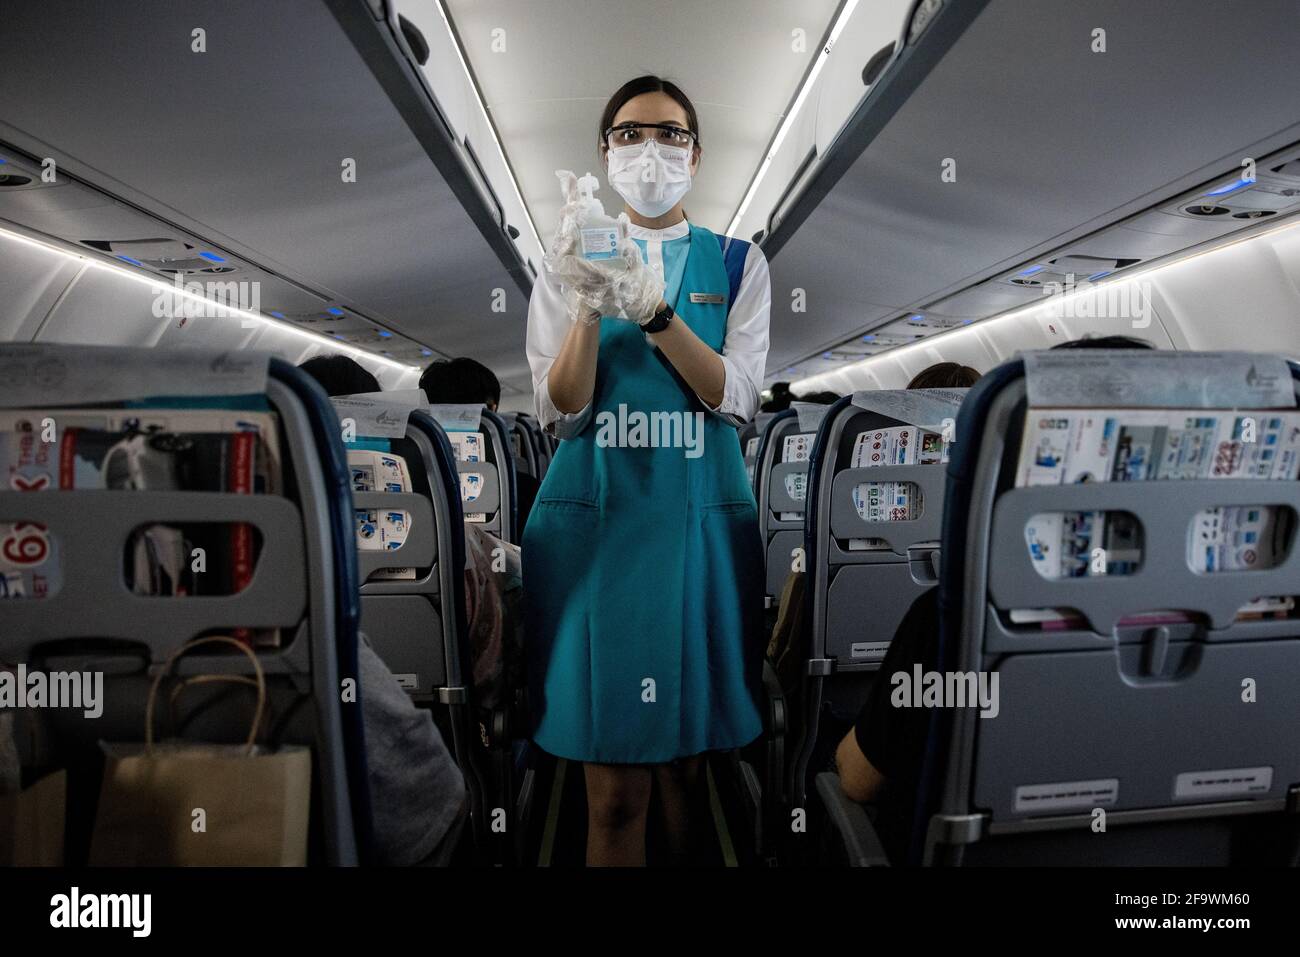 Ein Mitglied der Kabinencrew von Bangkok Airways, das eine Gesichtsmaske und eine Schutzbrille trägt, bietet Passagieren an Bord eines Fluges vom Flughafen Bangkok Suvarnabhumi nach Koh Samui, Thailand, am 8. März 2021 während der globalen Covid-19-Pandemie ein Händedesinfektionsmittel an. Stockfoto